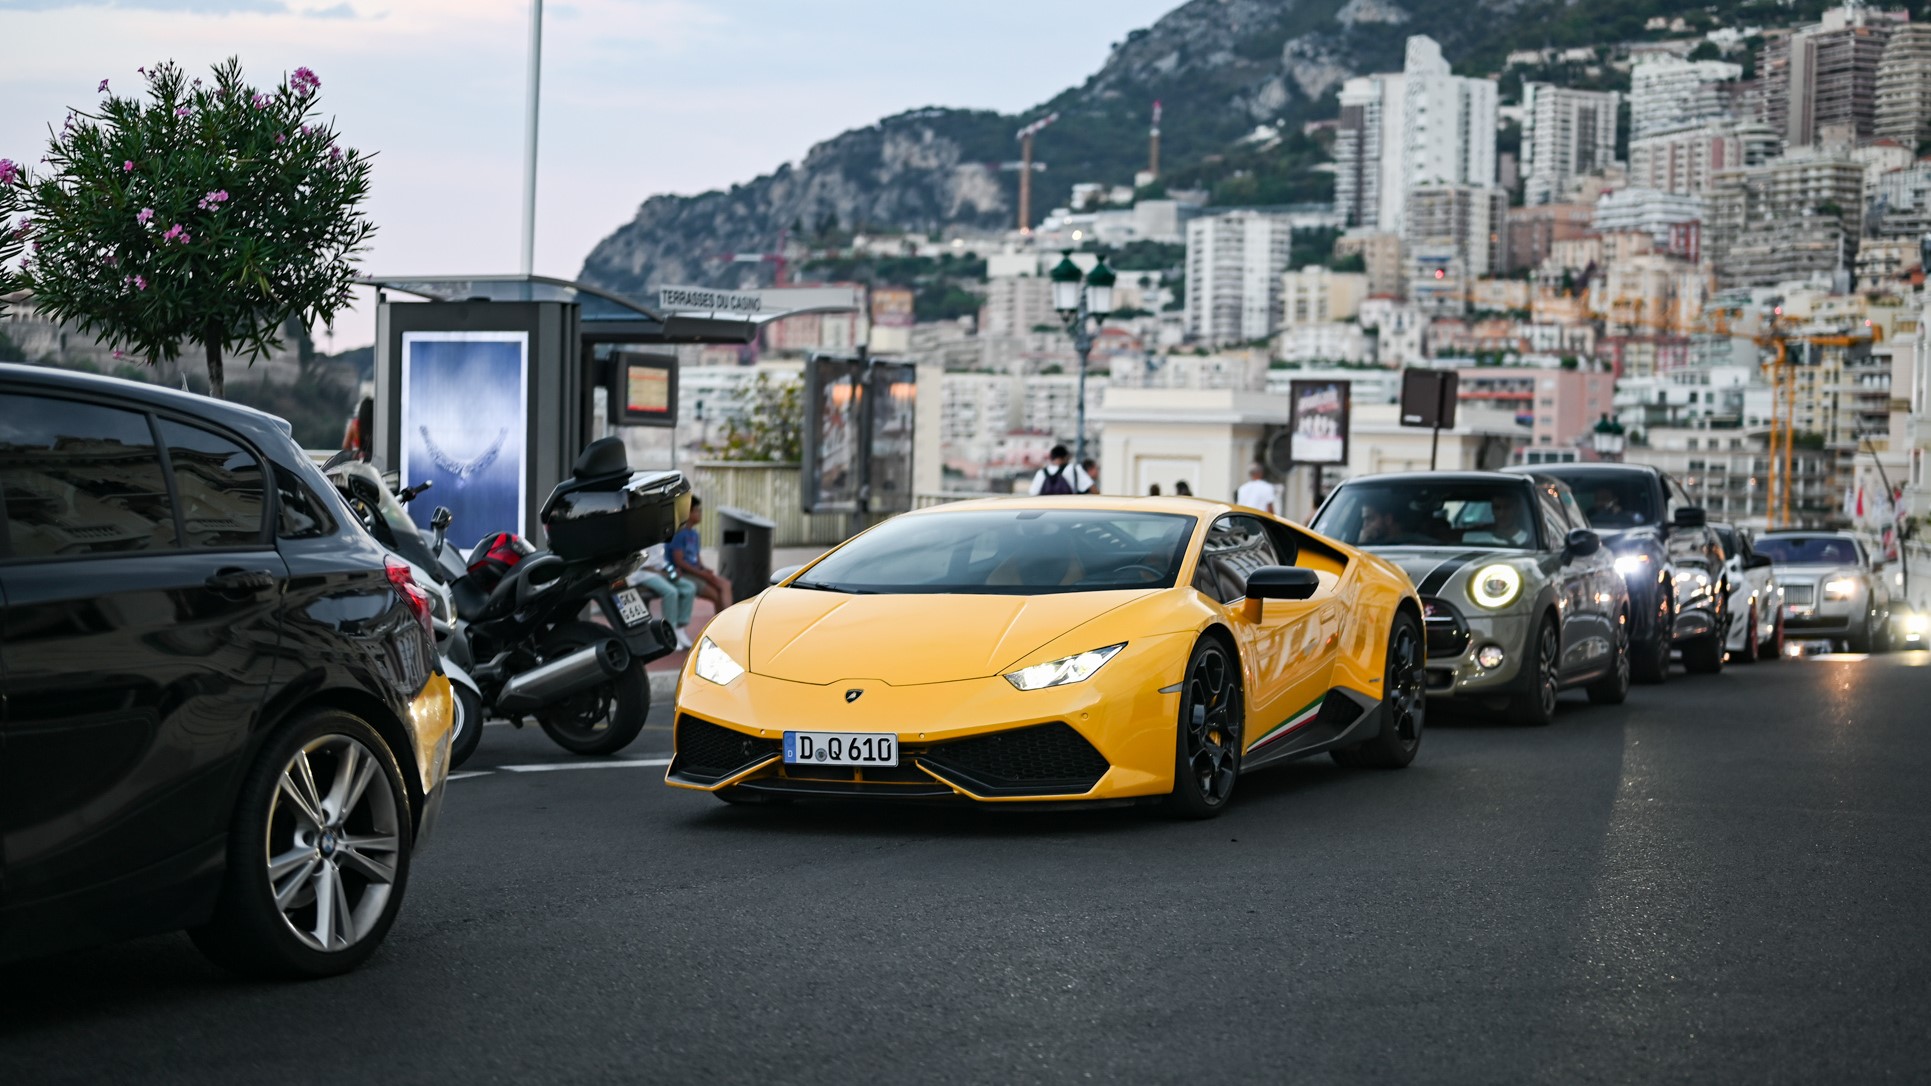 Lamborghini Huracan - D-Q610